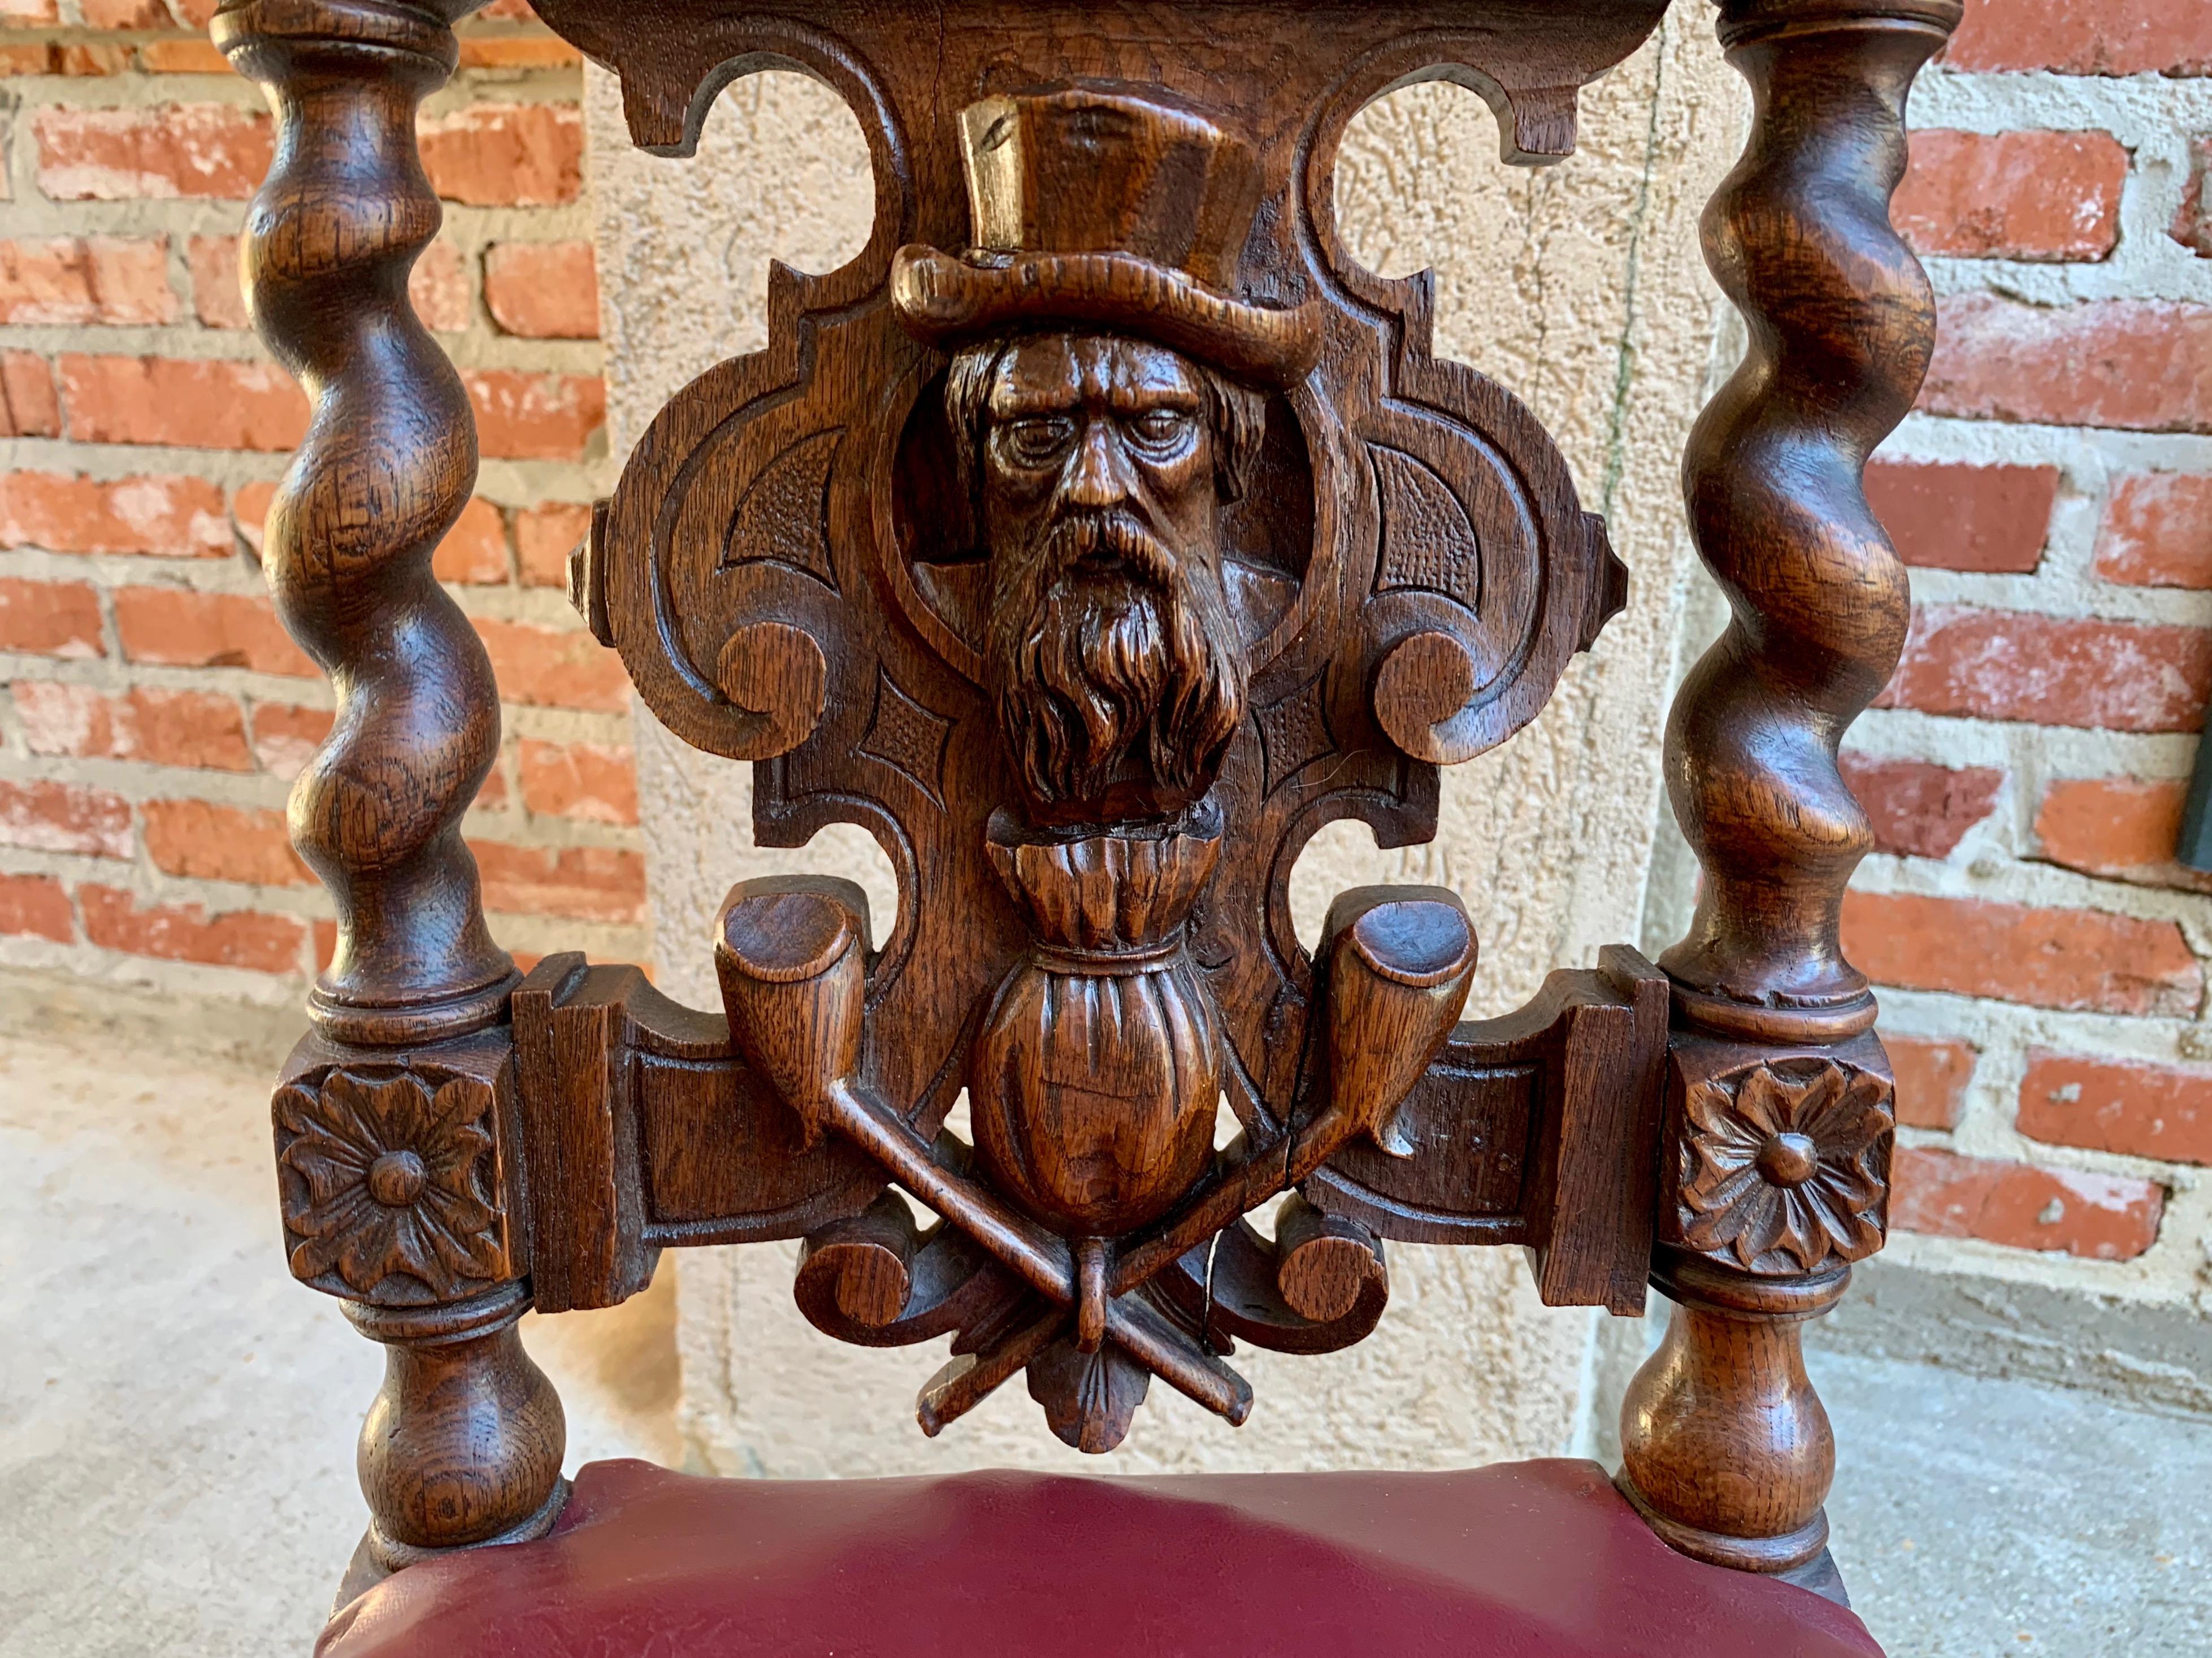 French Provincial 19th Century French Carved Oak Hall Chair Fumeur Barley Twist Breton Cigar Club